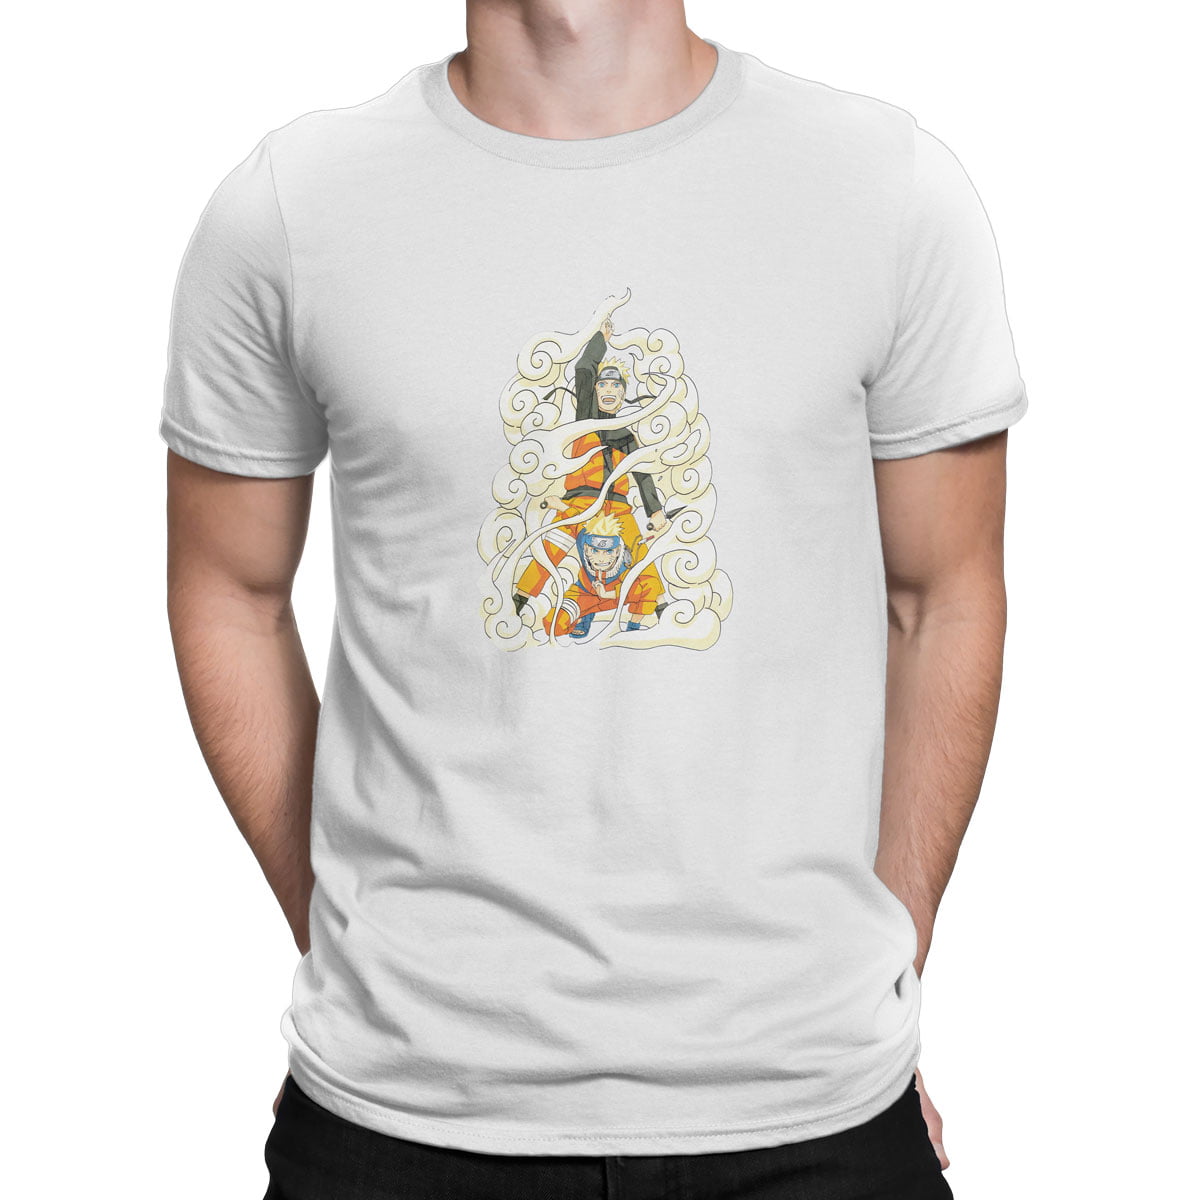 Naruto uzumaki no5 tisort erkek b - naruto uzumaki no5 t-shirt - figurex